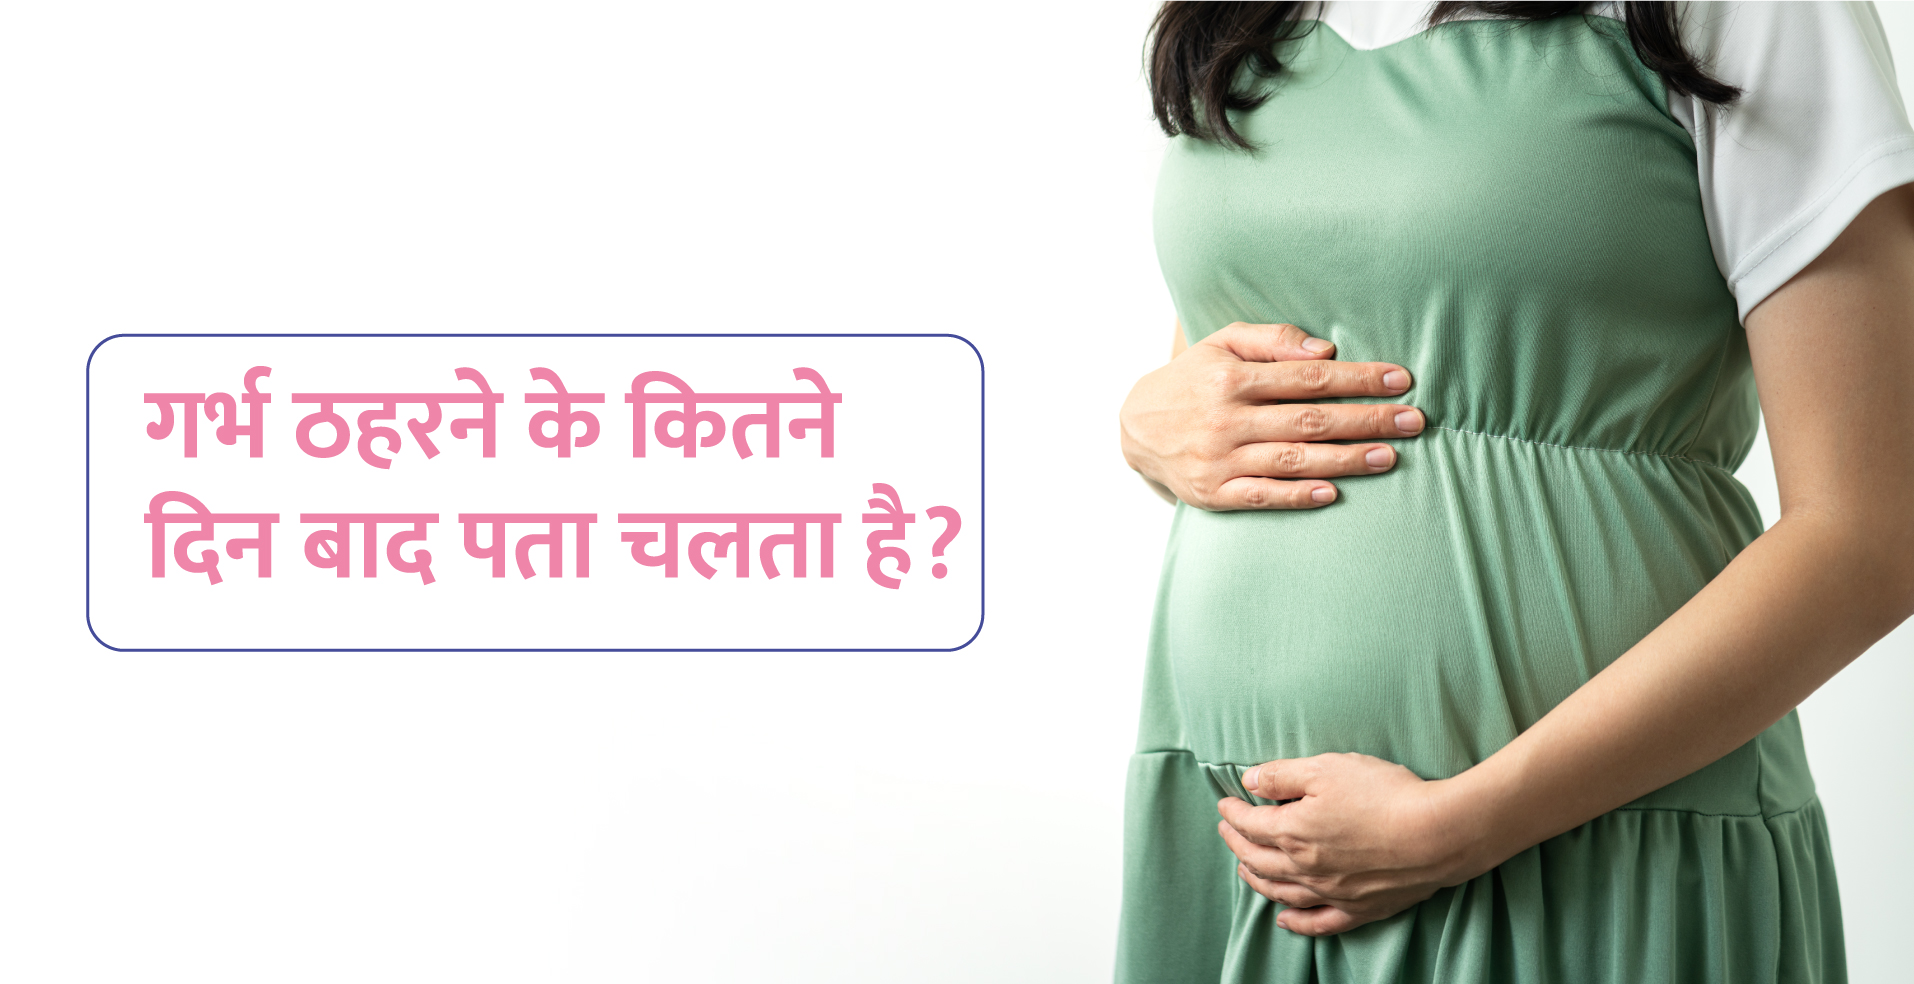 حمل سرمائيداري ڪيئي ڏينهن پوءِ پريگنسي معلوم ٿيندي آهي؟